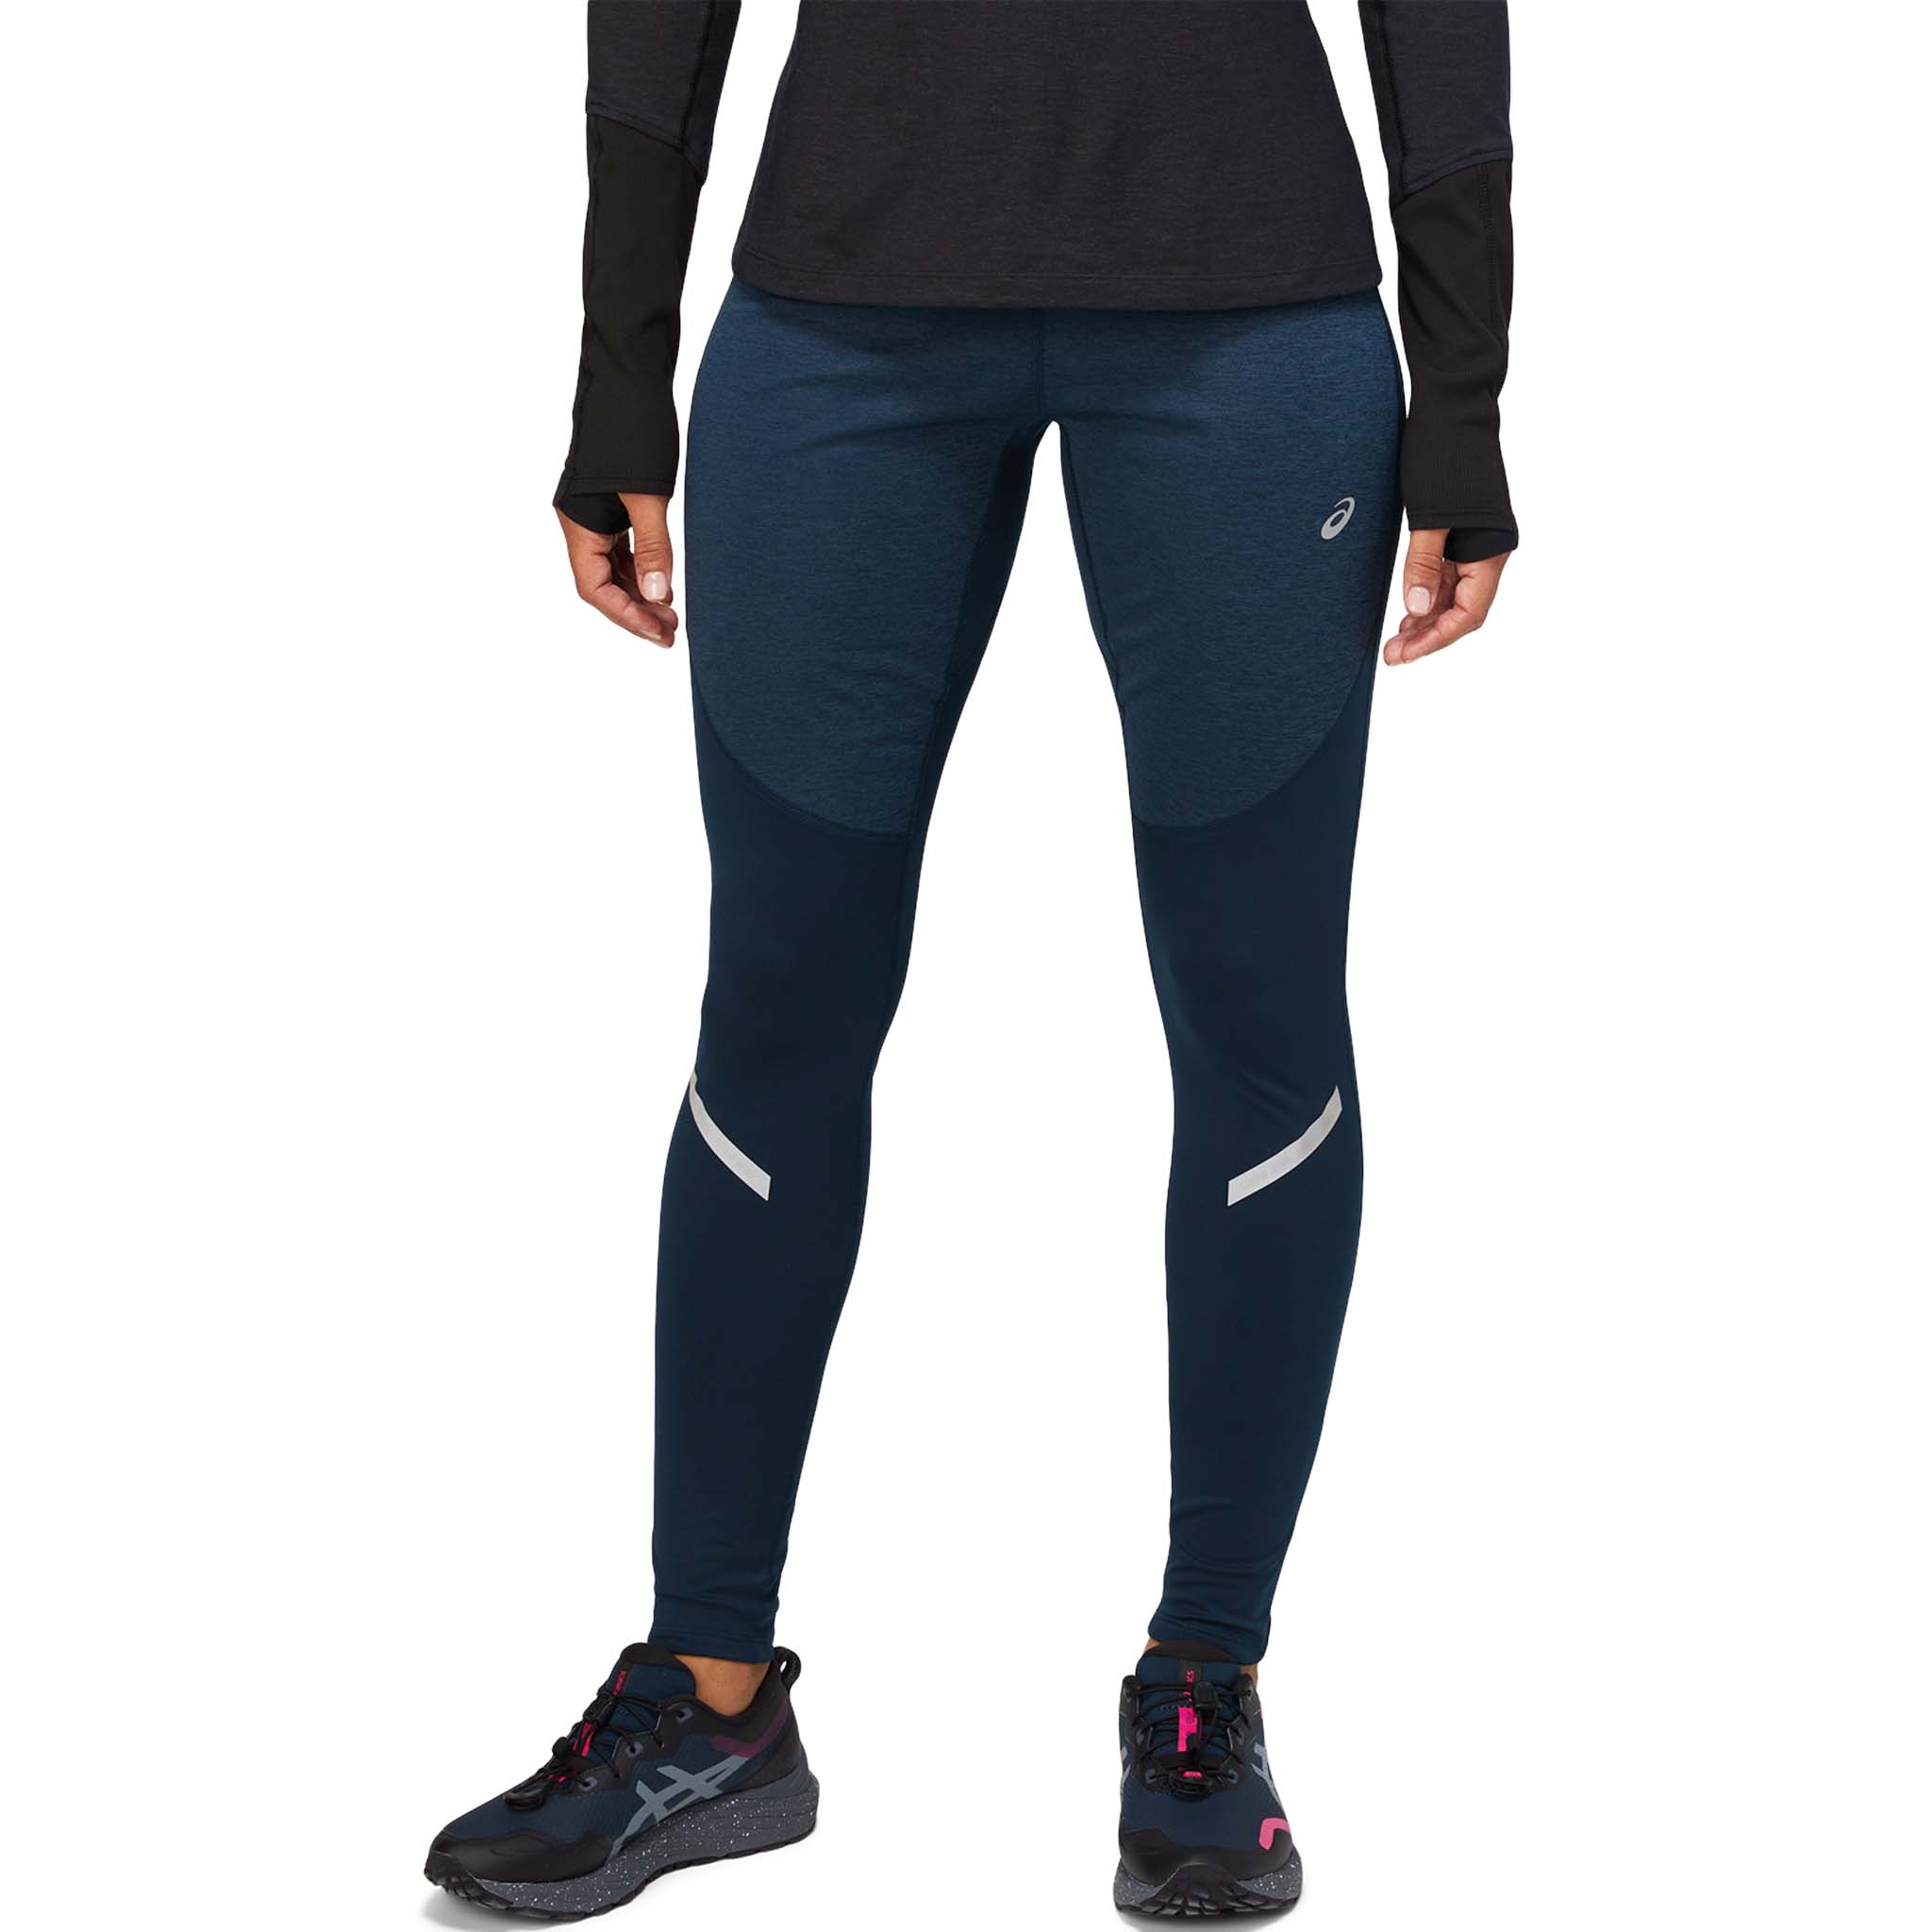 ASICS Lite-Show Winter running leggings for women – Soccer Sport Fitness